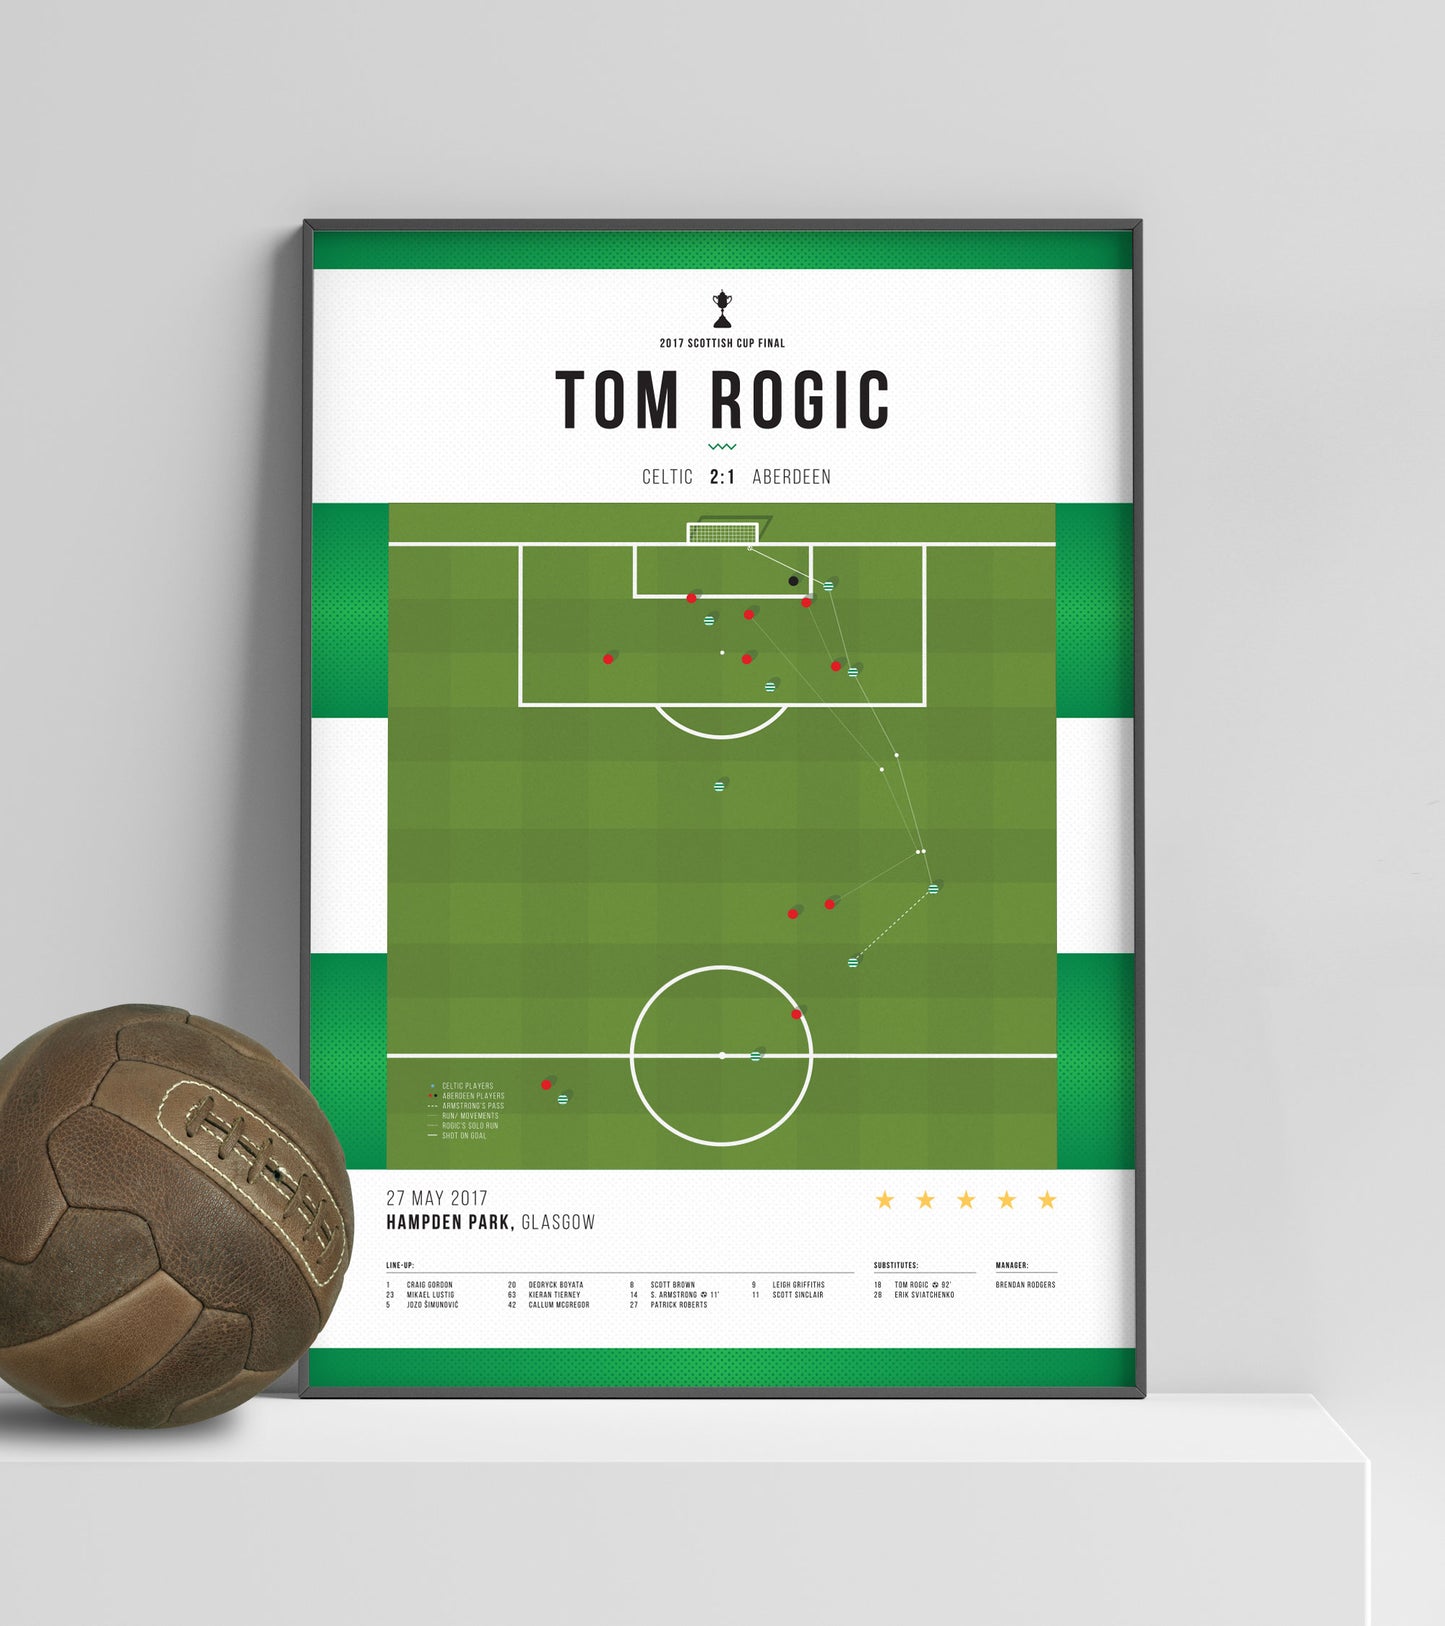 Tom Rogic's game-winning goal vs Aberdeen